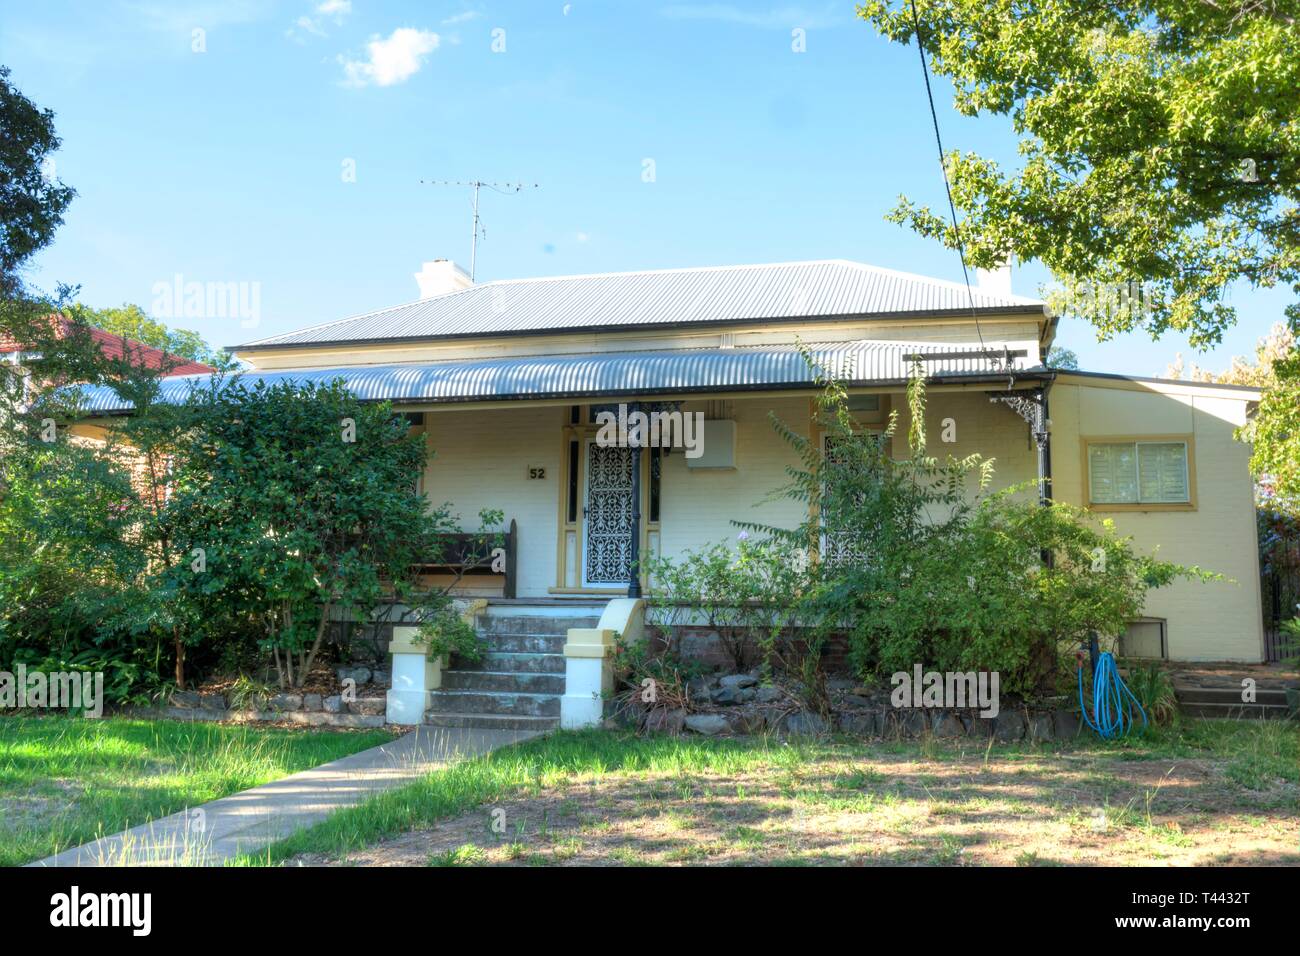 Un c1910s cottage suburbain construit au milieu du style victorien. Tamworth NSW Australie. Banque D'Images